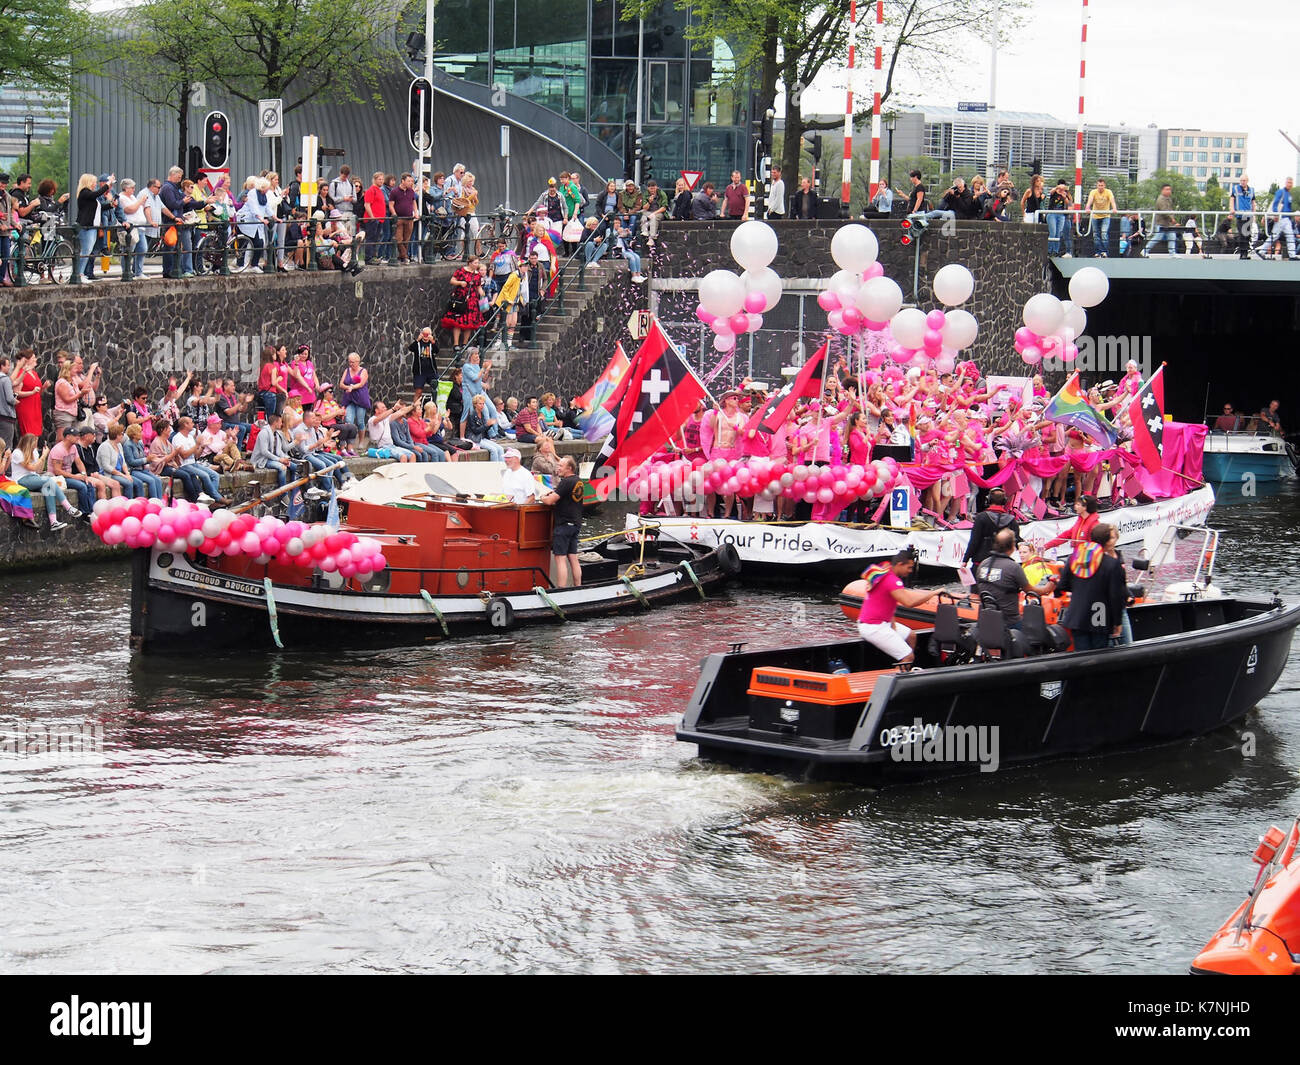 Barca 2 il mio orgoglio mio Amsterdam, Canal Parade Amsterdam 2017 foto 3 Foto Stock